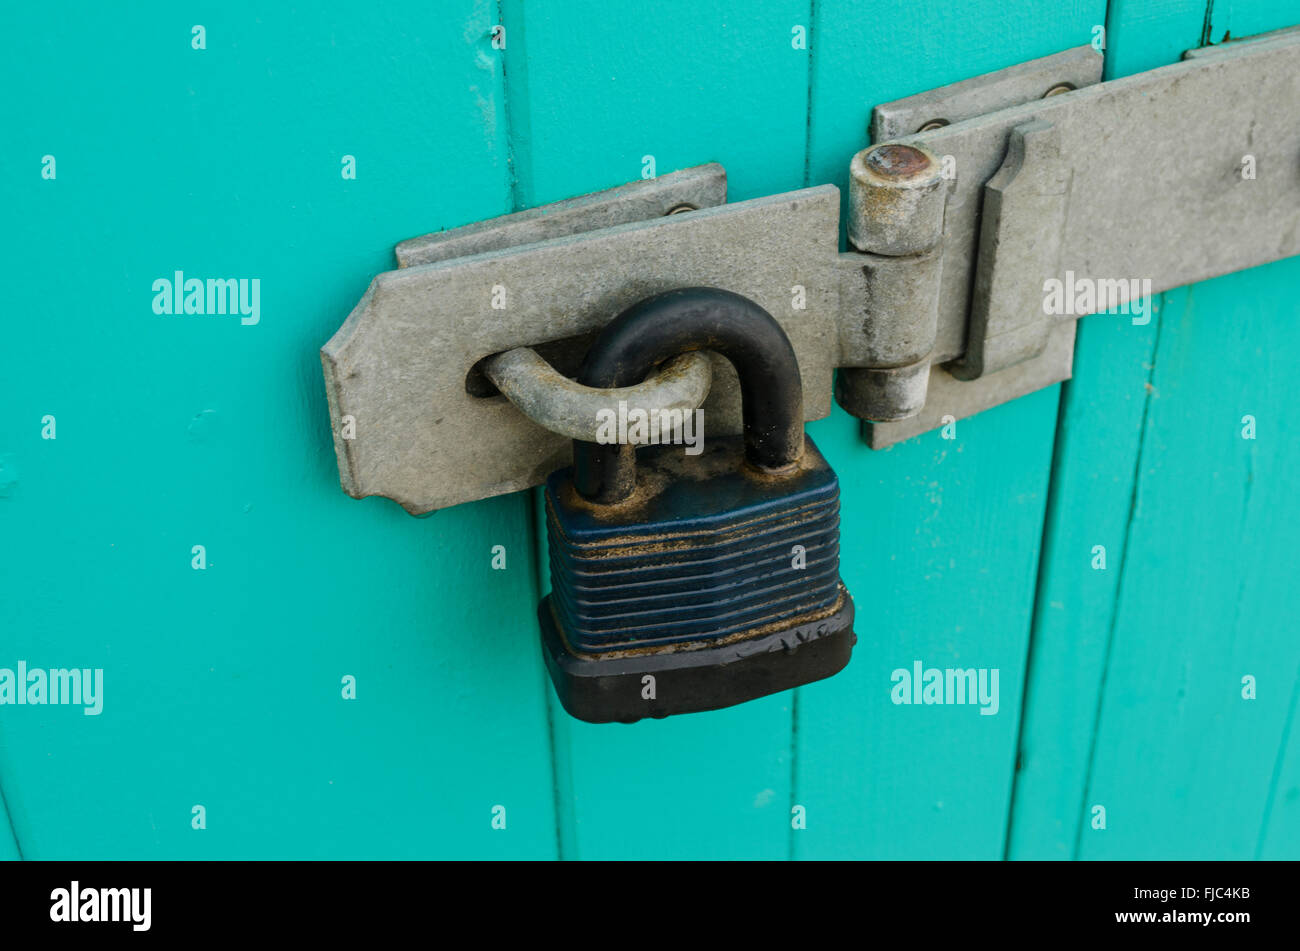 Closeup detail of padlock and hasp Stock Photo